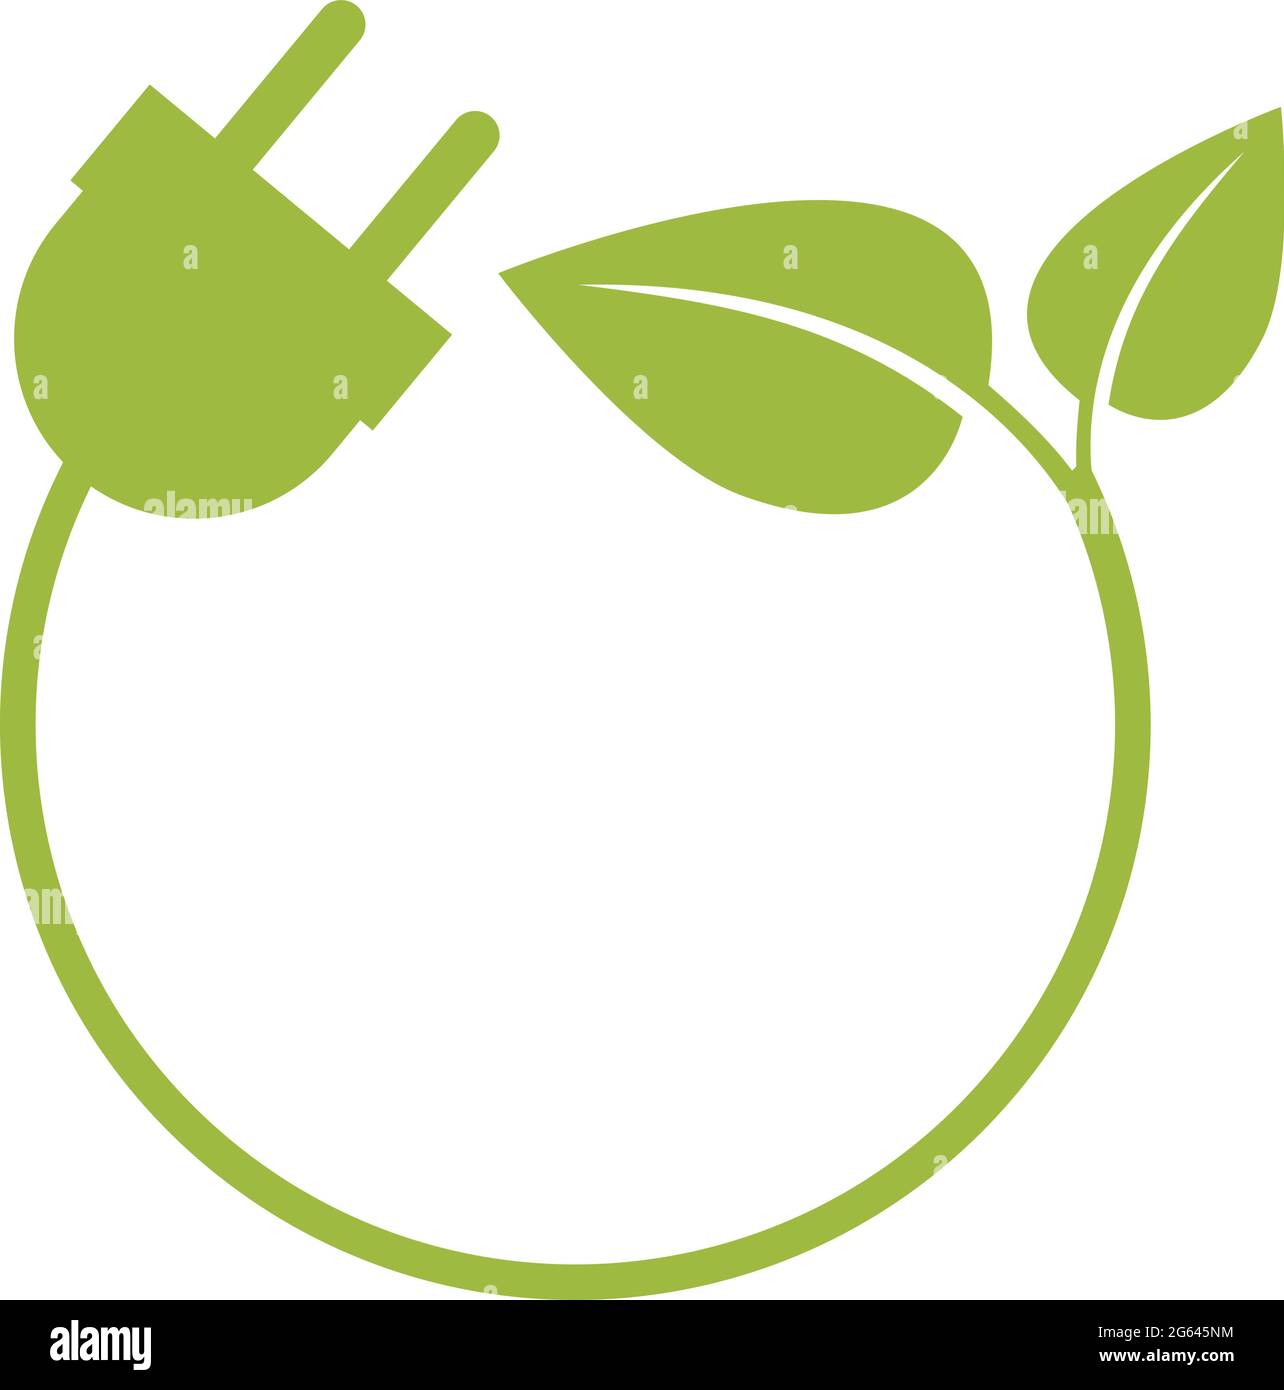 simbolo verde rotondo dell'energia o logo con spina e foglie, illustrazione vettoriale Illustrazione Vettoriale